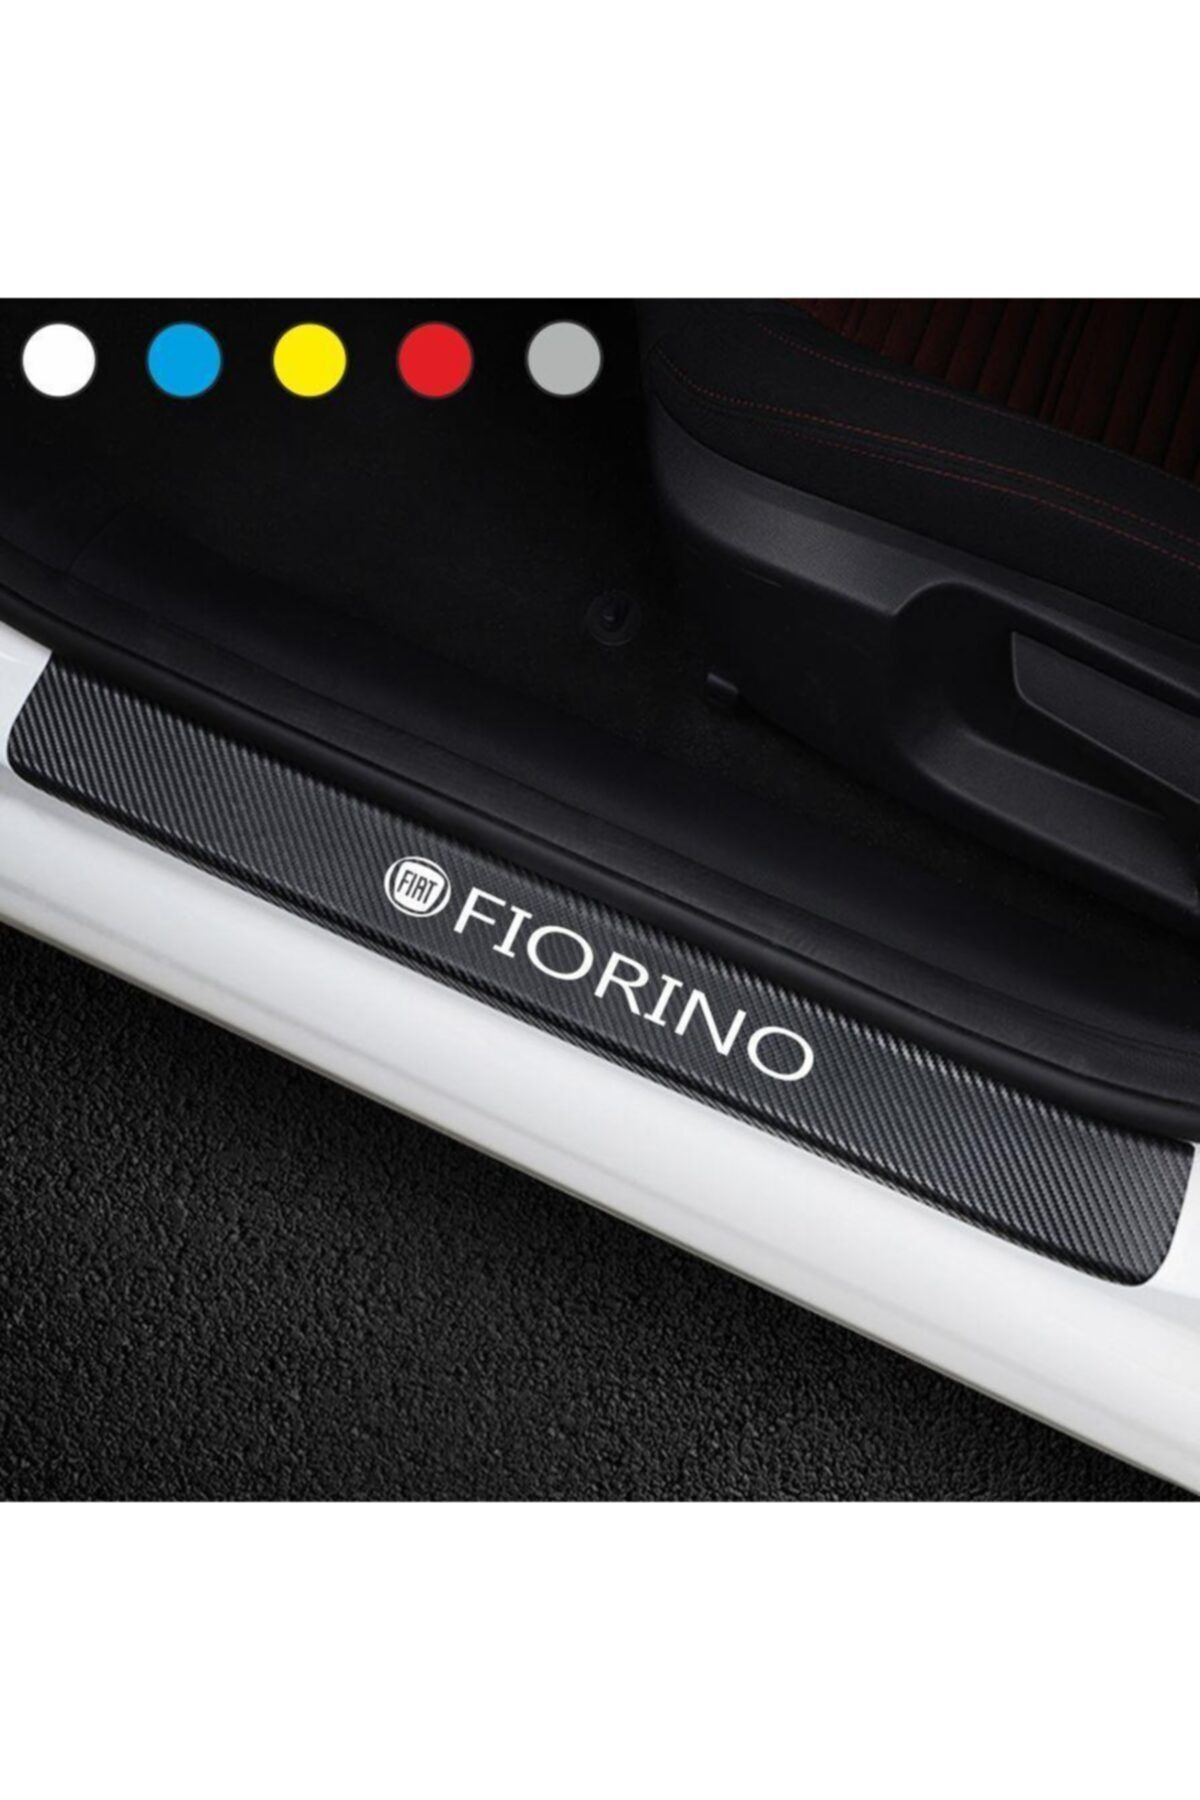 Genel Markalar Fiat Fiorino İçin Uyumlu Aksesuar Oto Kapı Eşiği Sticker Karbon 4 Adet